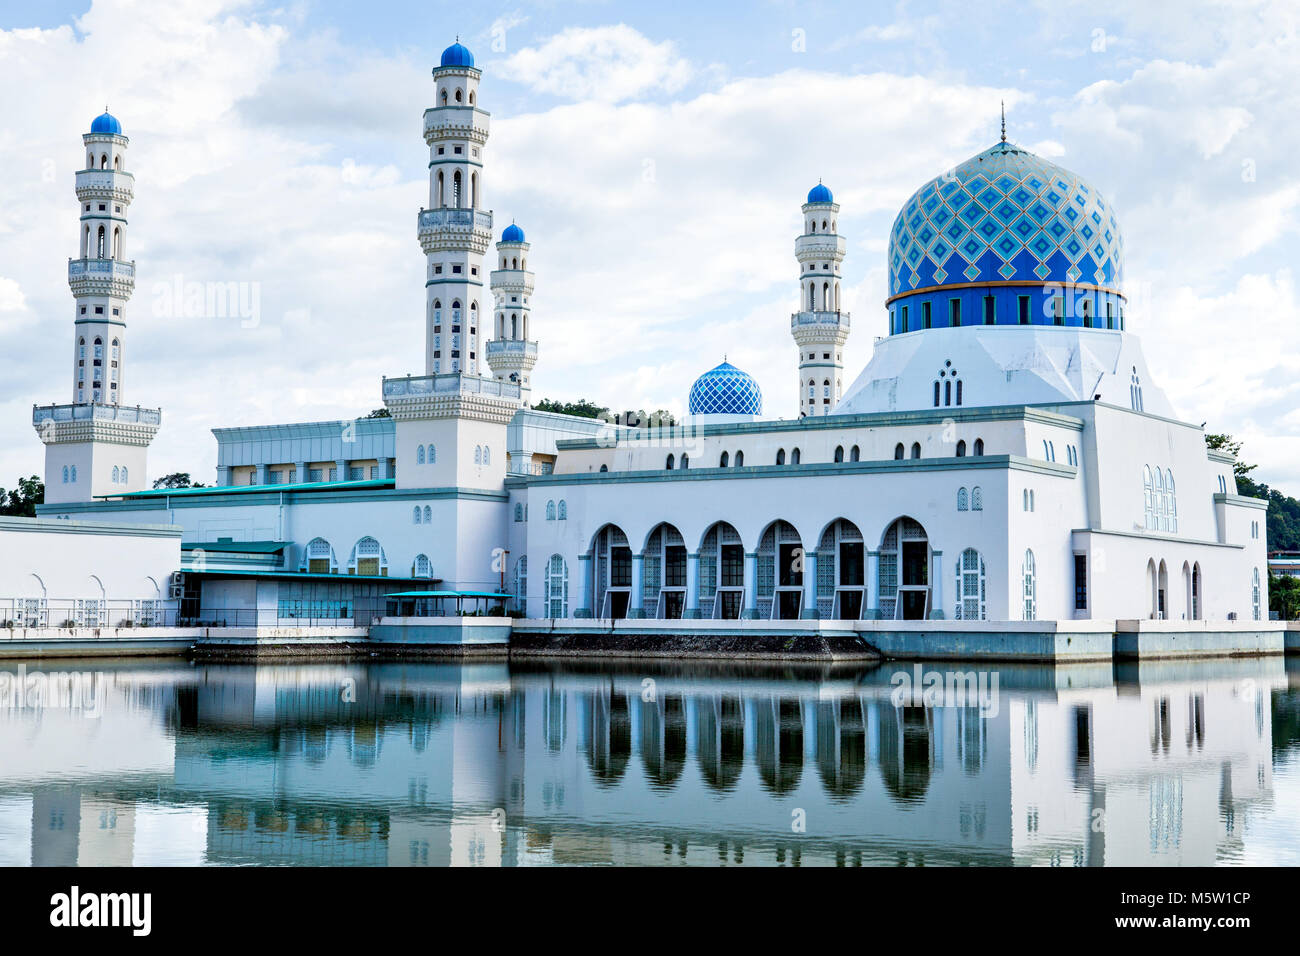 Kota Kinabalu City Mosque, Sabah, Borneo, Malaysia Stock Photo